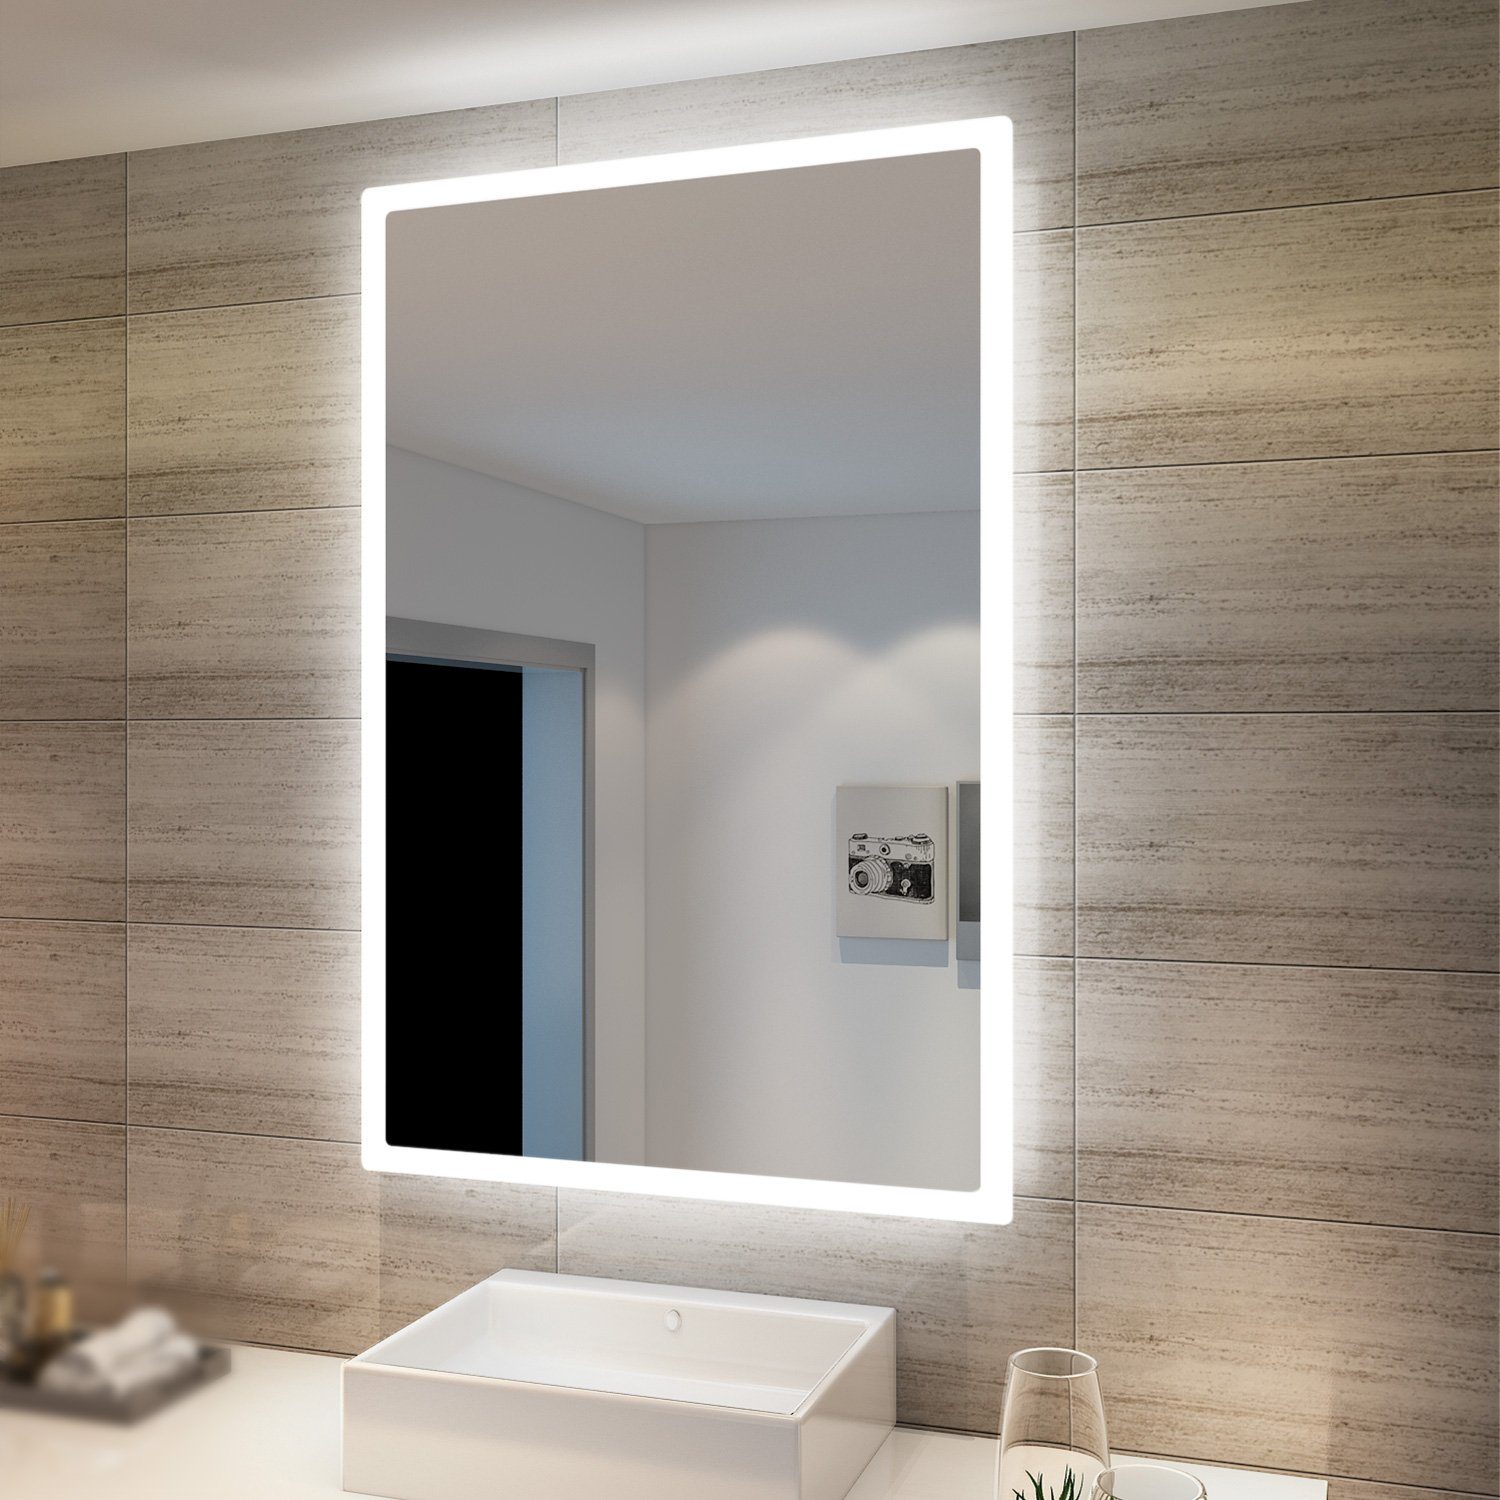 SONNI Schminkspiegel Wandspiegel mit LED Beleuchtung 60×40 cm kaltweiß Wandschalter, energiesparender, Badspiegel,Lichtspiegel IP44,Badezimmerspiegel